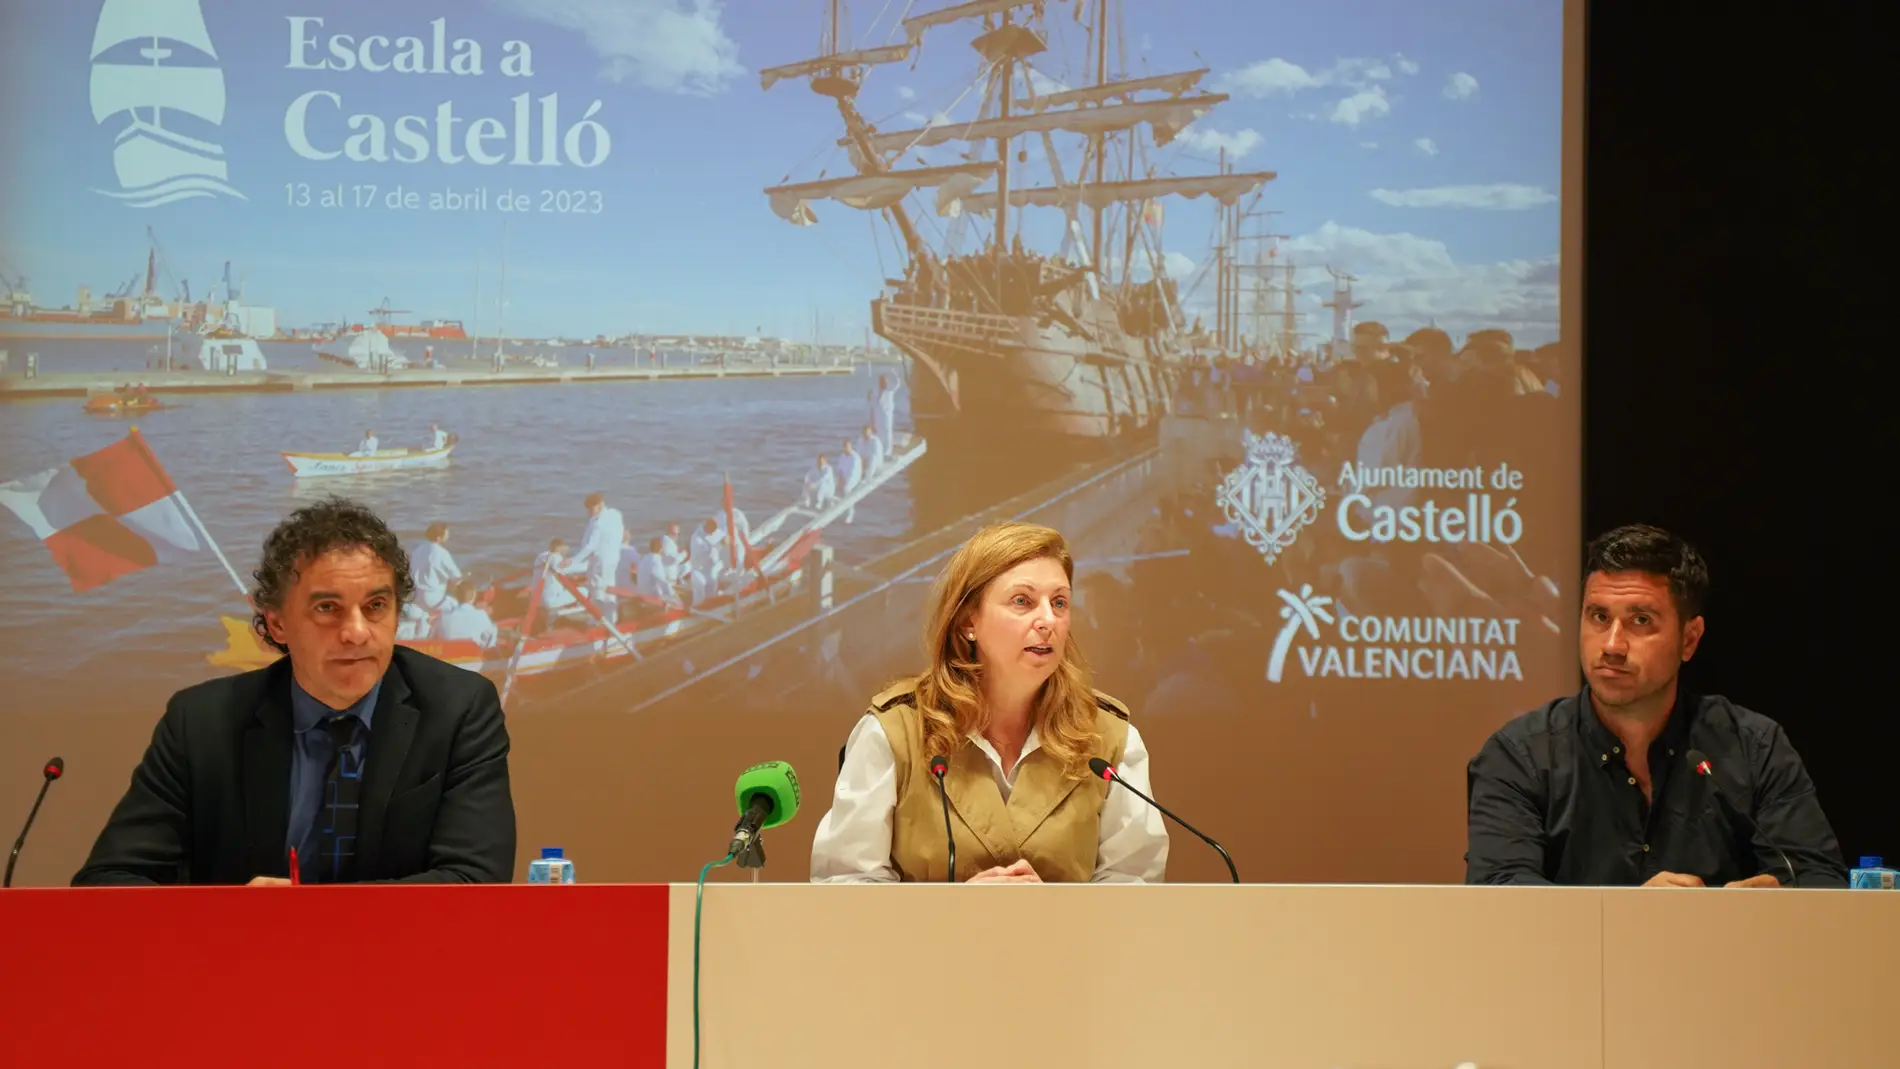  ‘Escala a Castelló’ atrae 11 embarcaciones en su VI edición